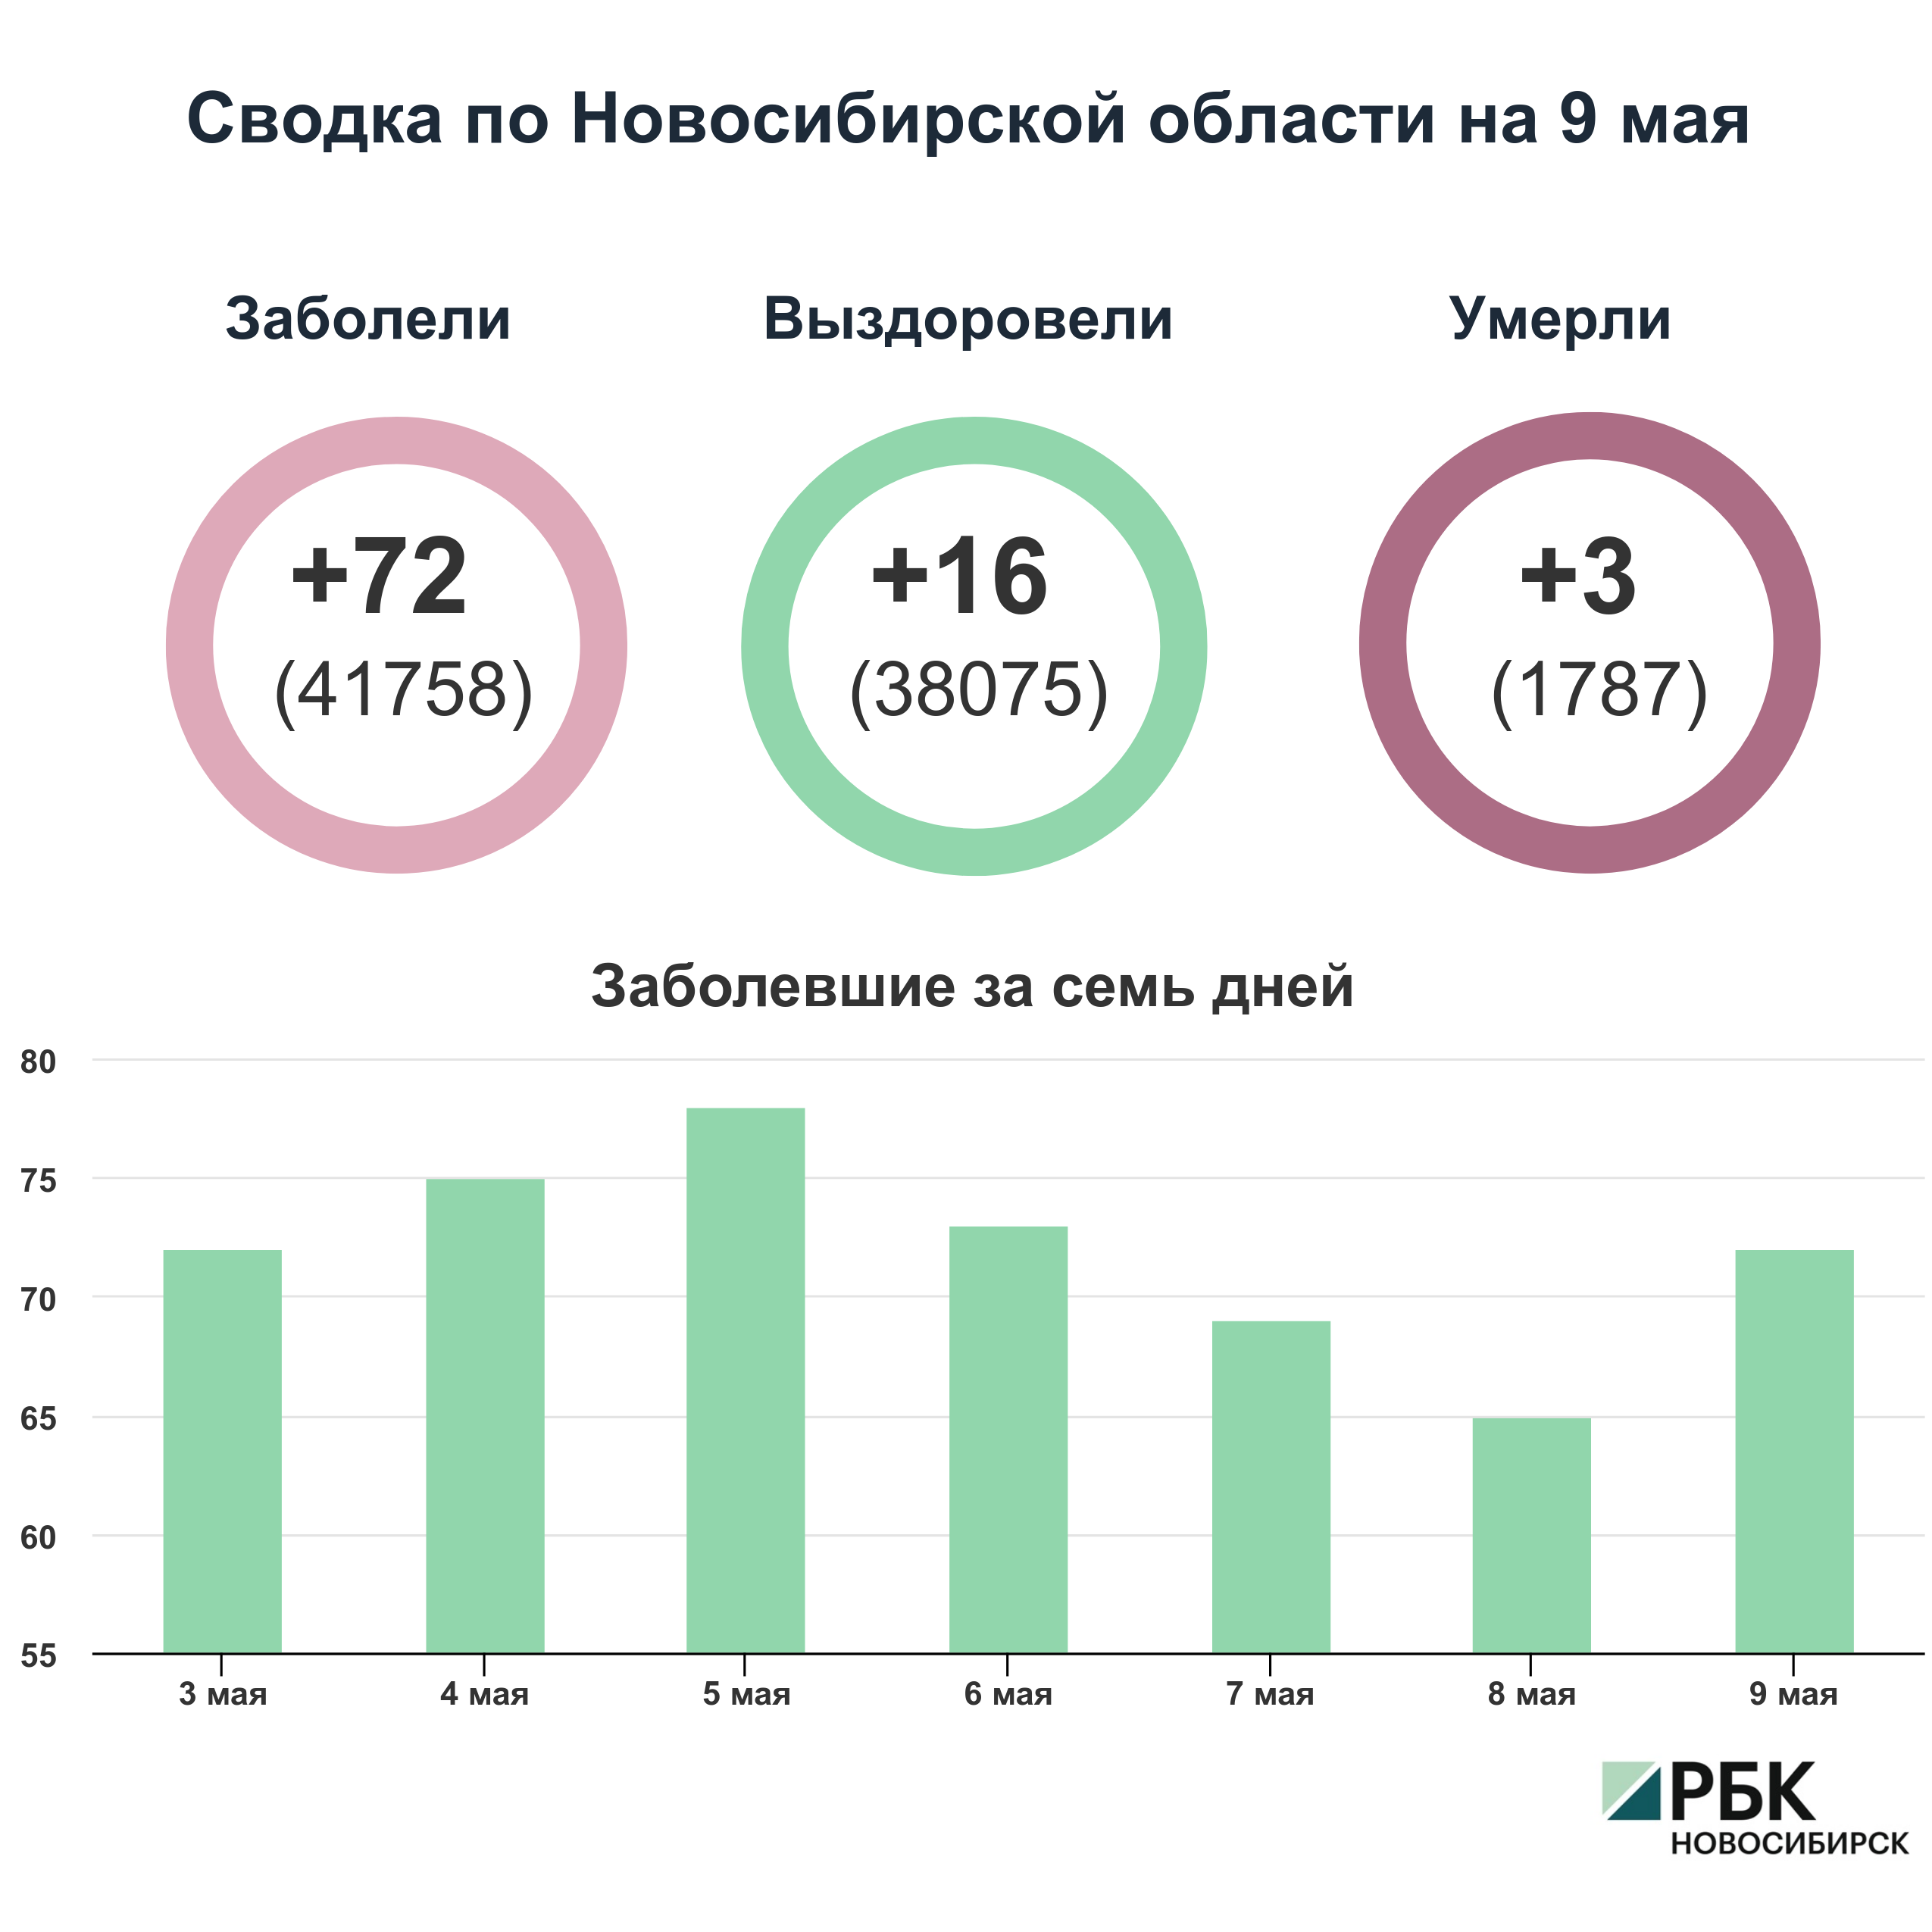 Коронавирус в Новосибирске: сводка на 9 мая